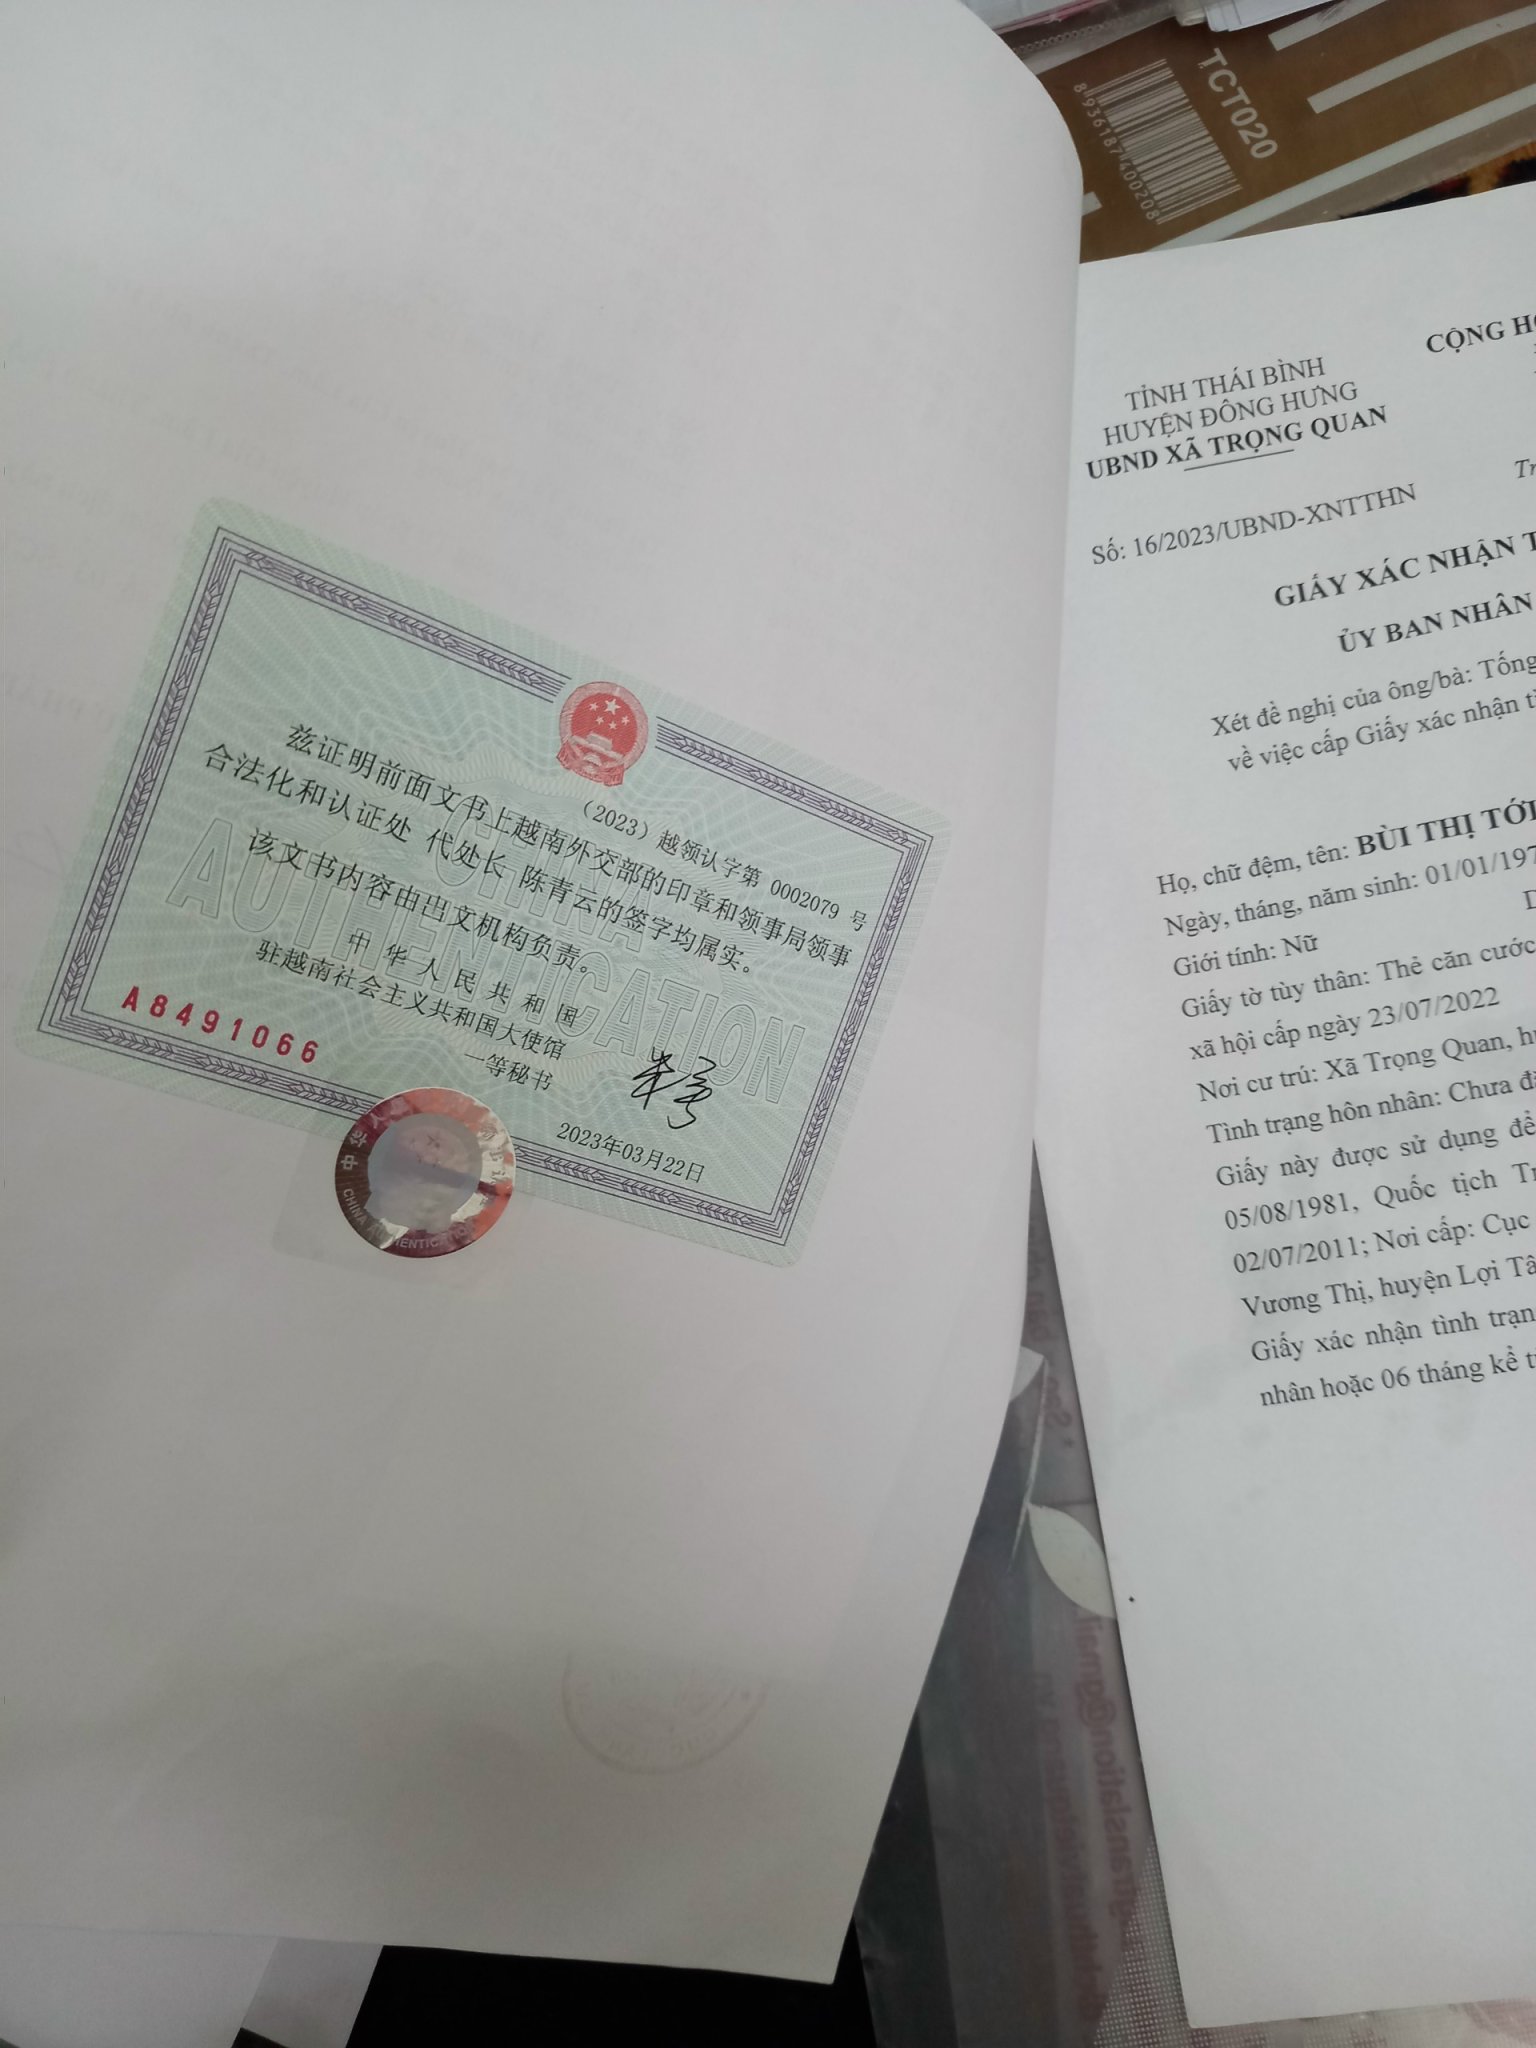 Hợp pháp hóa lãnh sự | Giấy kết hôn tại Việt Nam có dùng được ở Trung Quốc không?